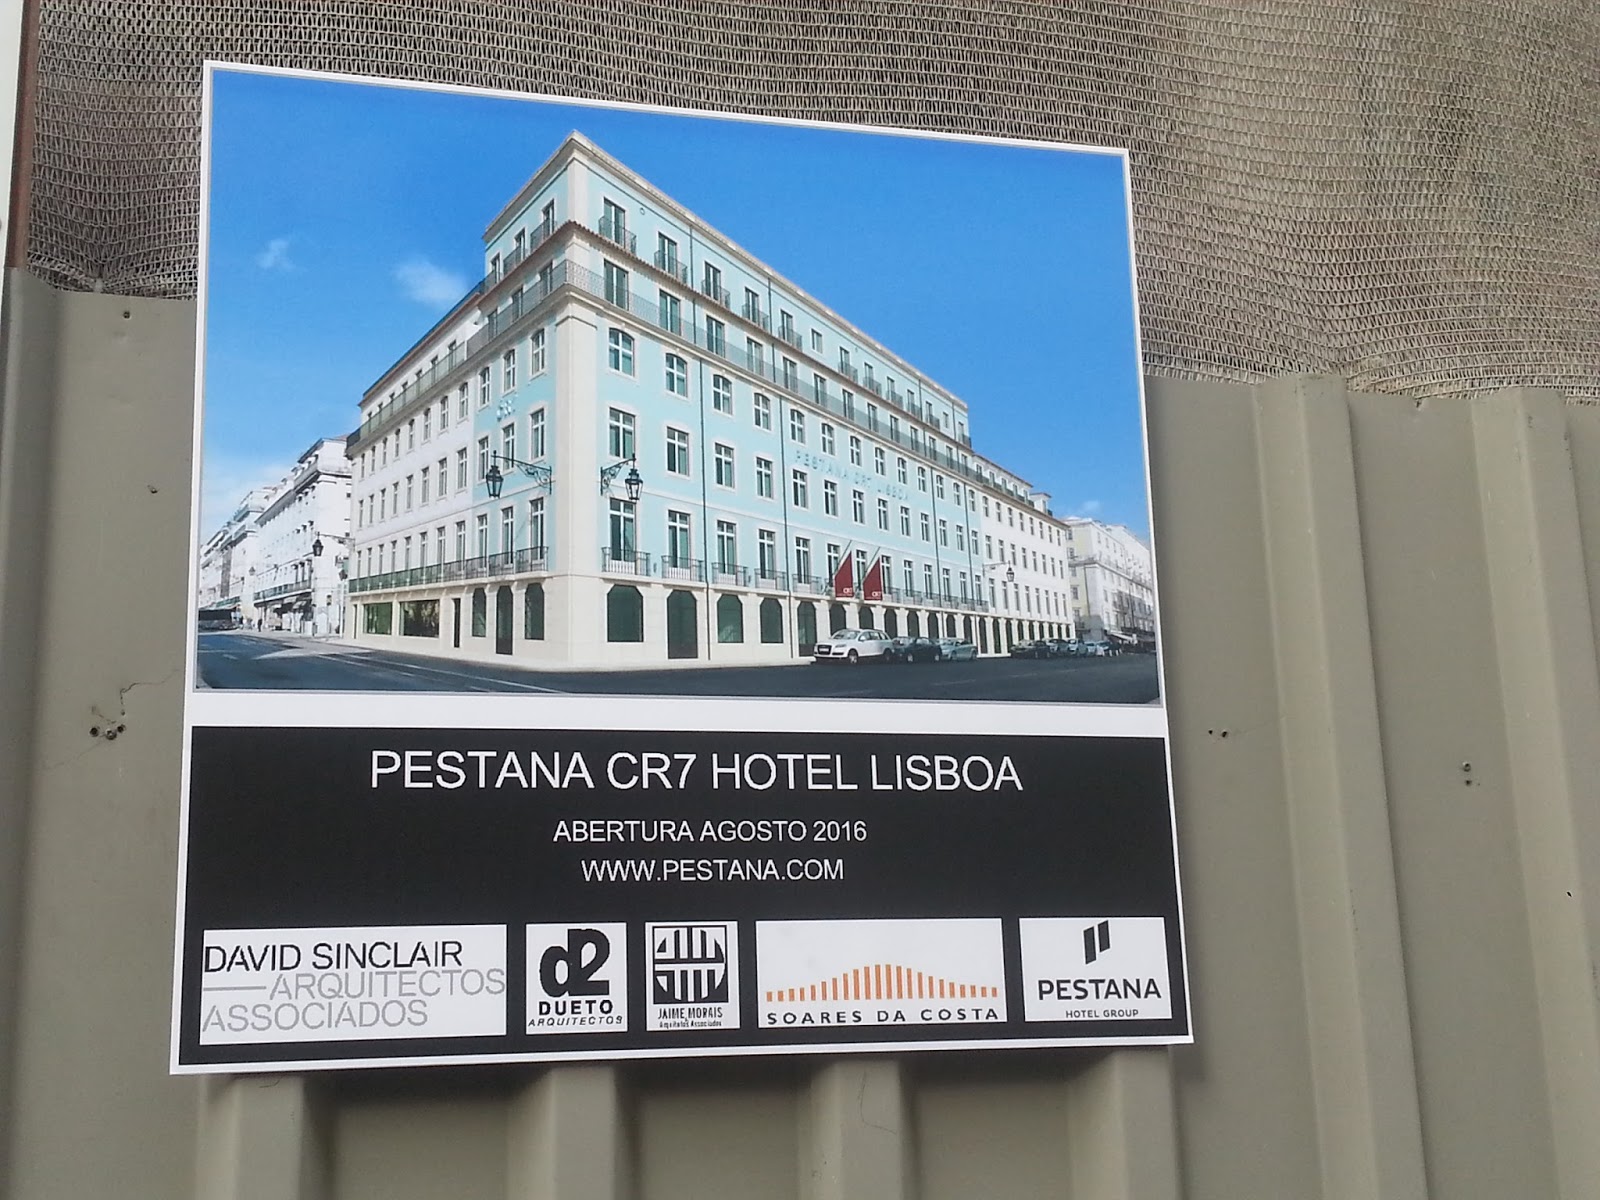 Khách sạn Pestana CR7 Funchal nằm trên cảng Funchal, liền kề với bảo tàng bóng đá của Cristiano Ronaldo.   